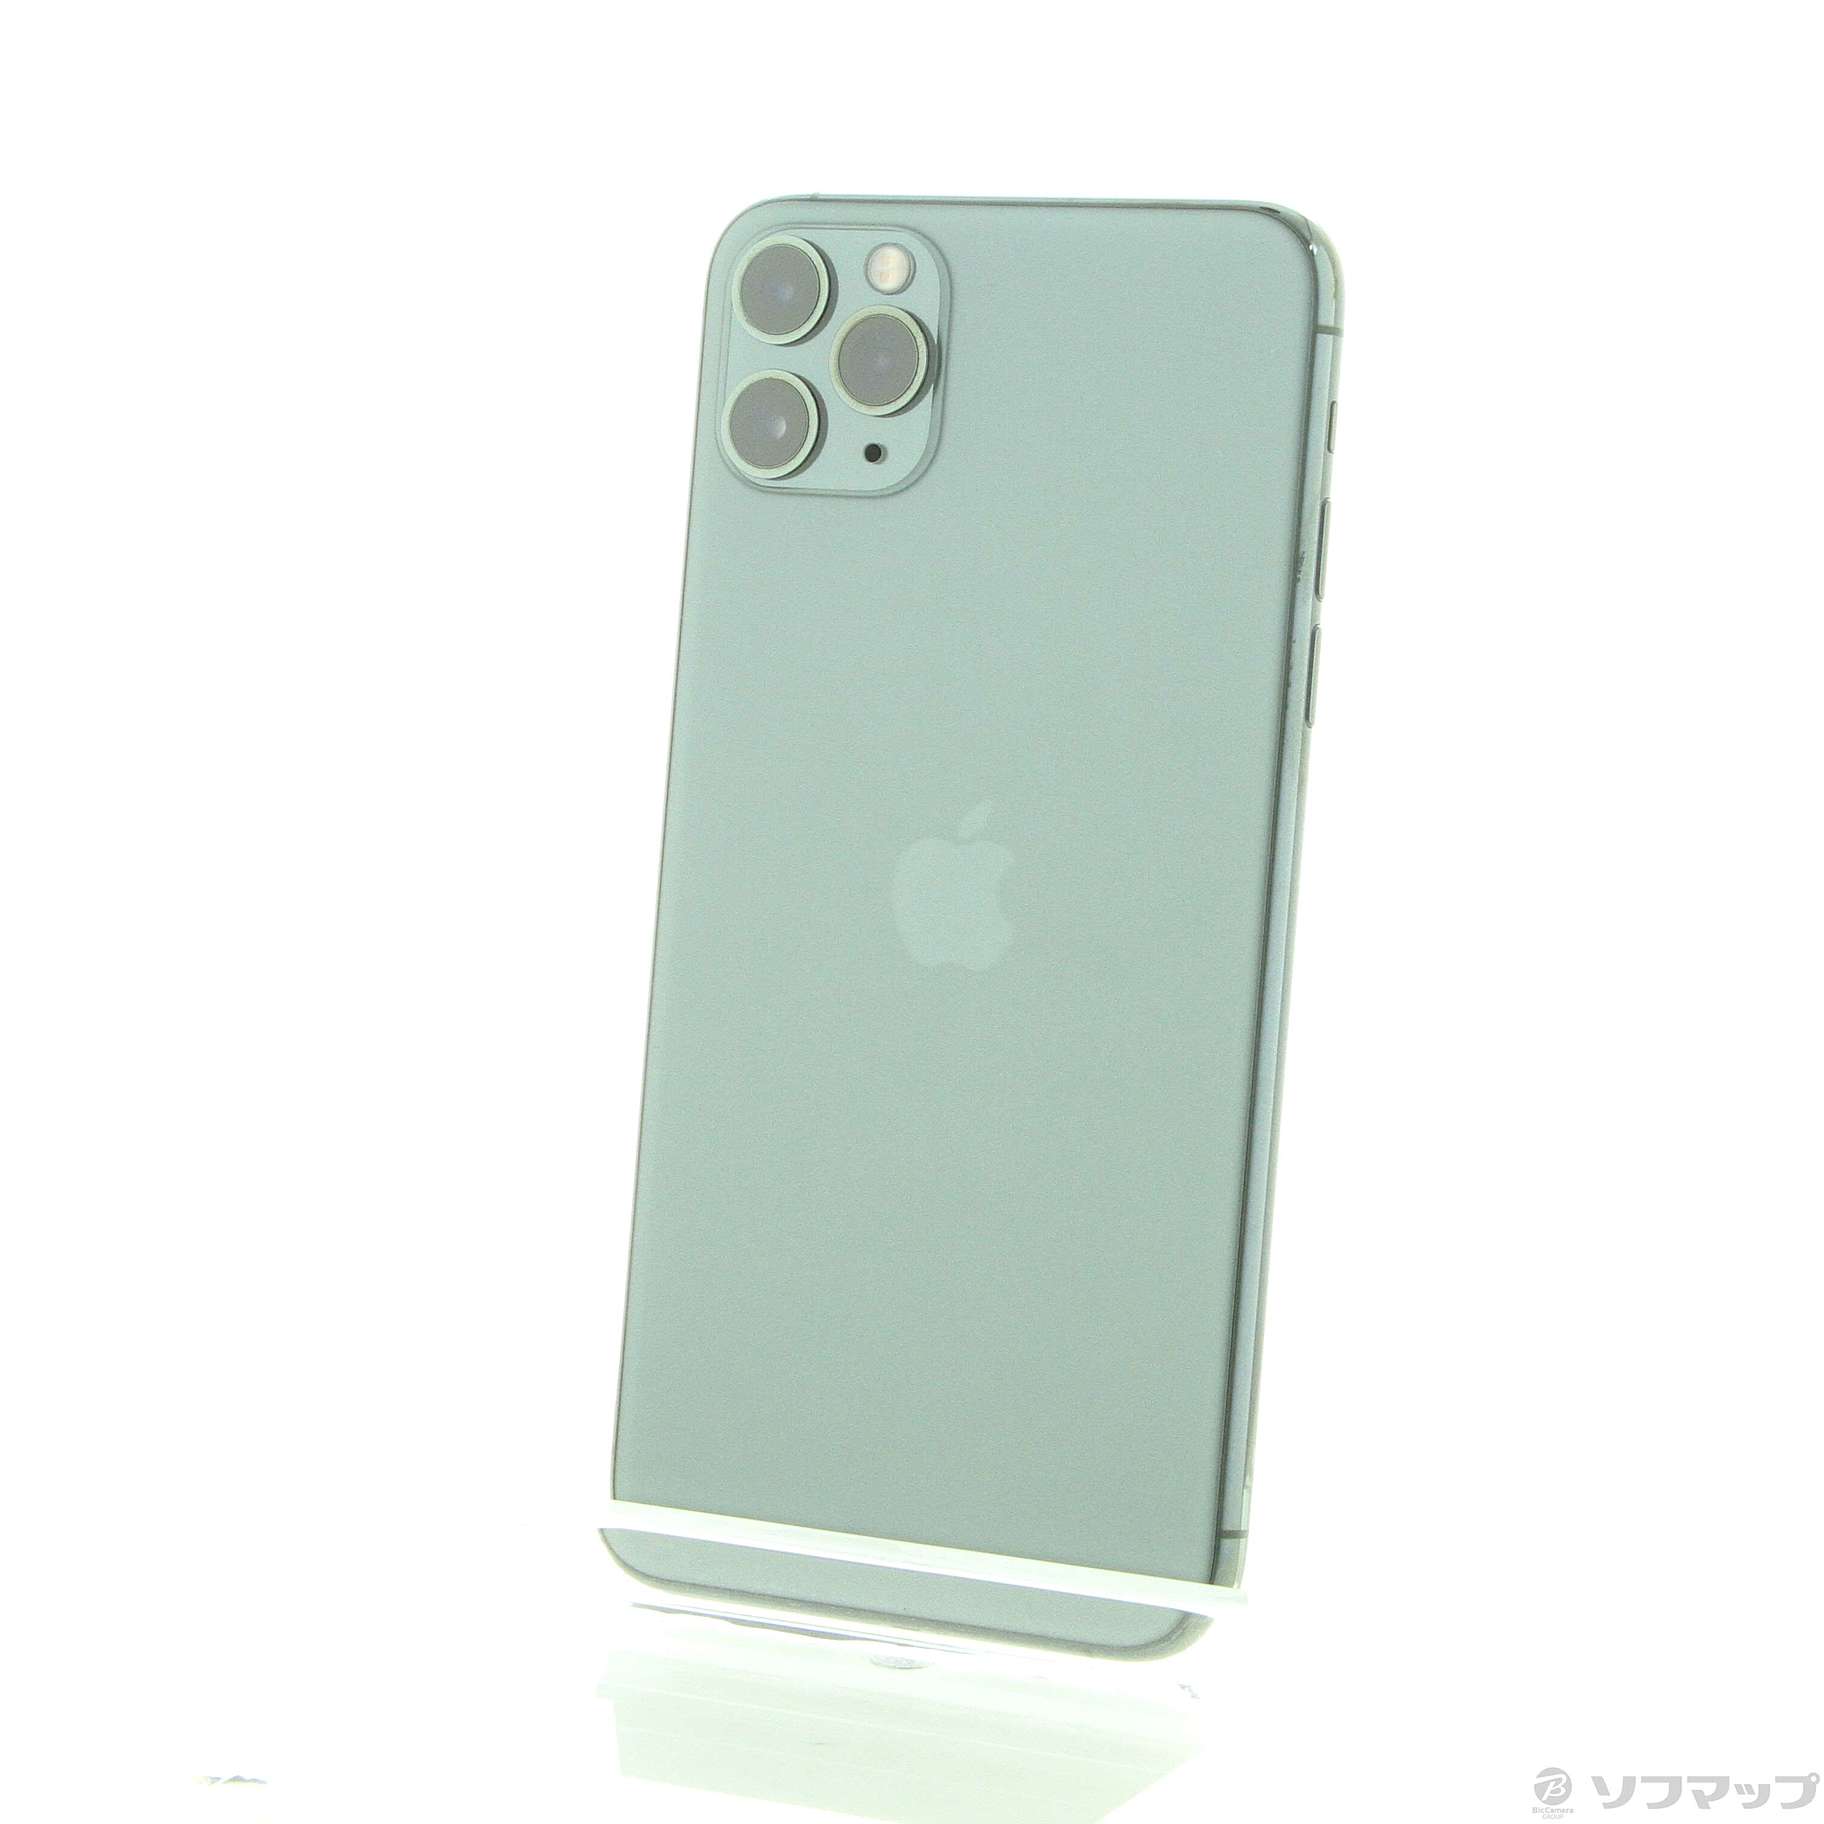 アップル iPhone11 Pro Max 256GB ミッドナイトグリーン